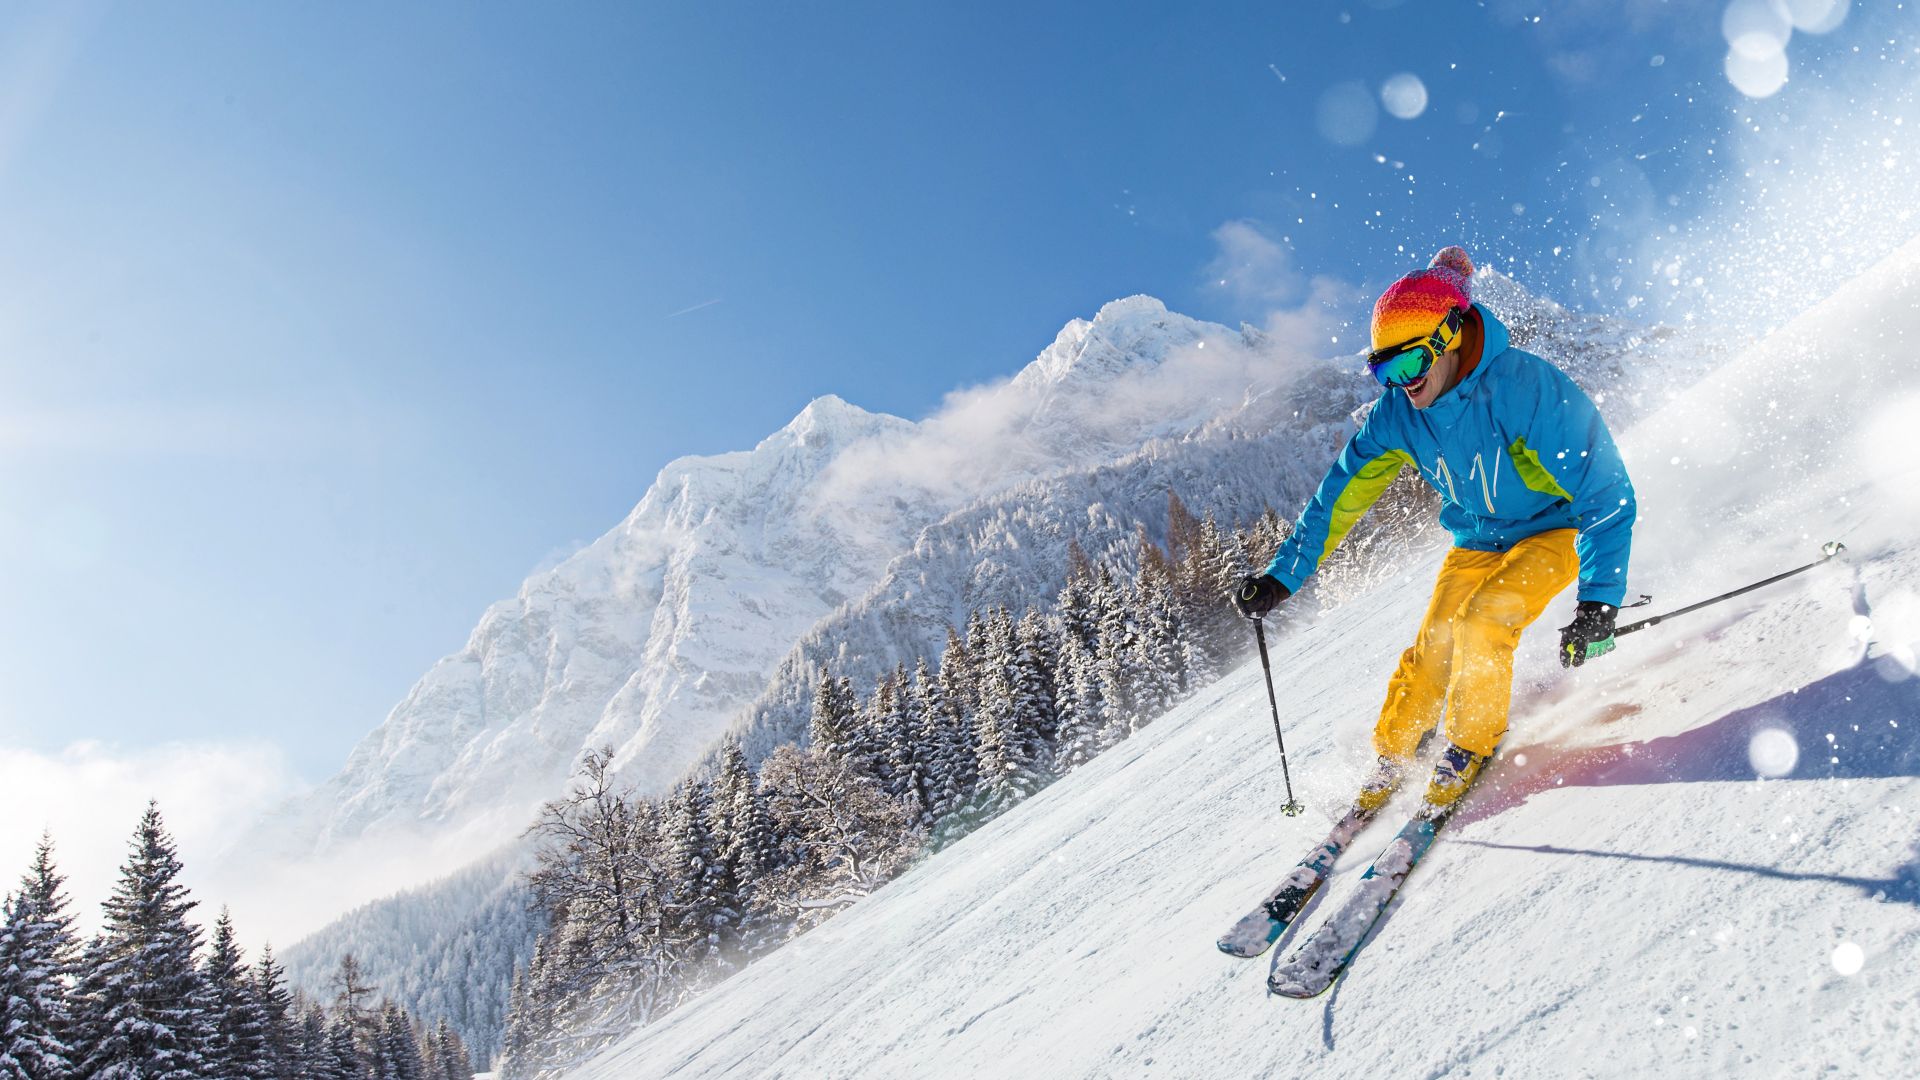 Skieur skiant en descente pendant une journée ensoleillée en haute montagne